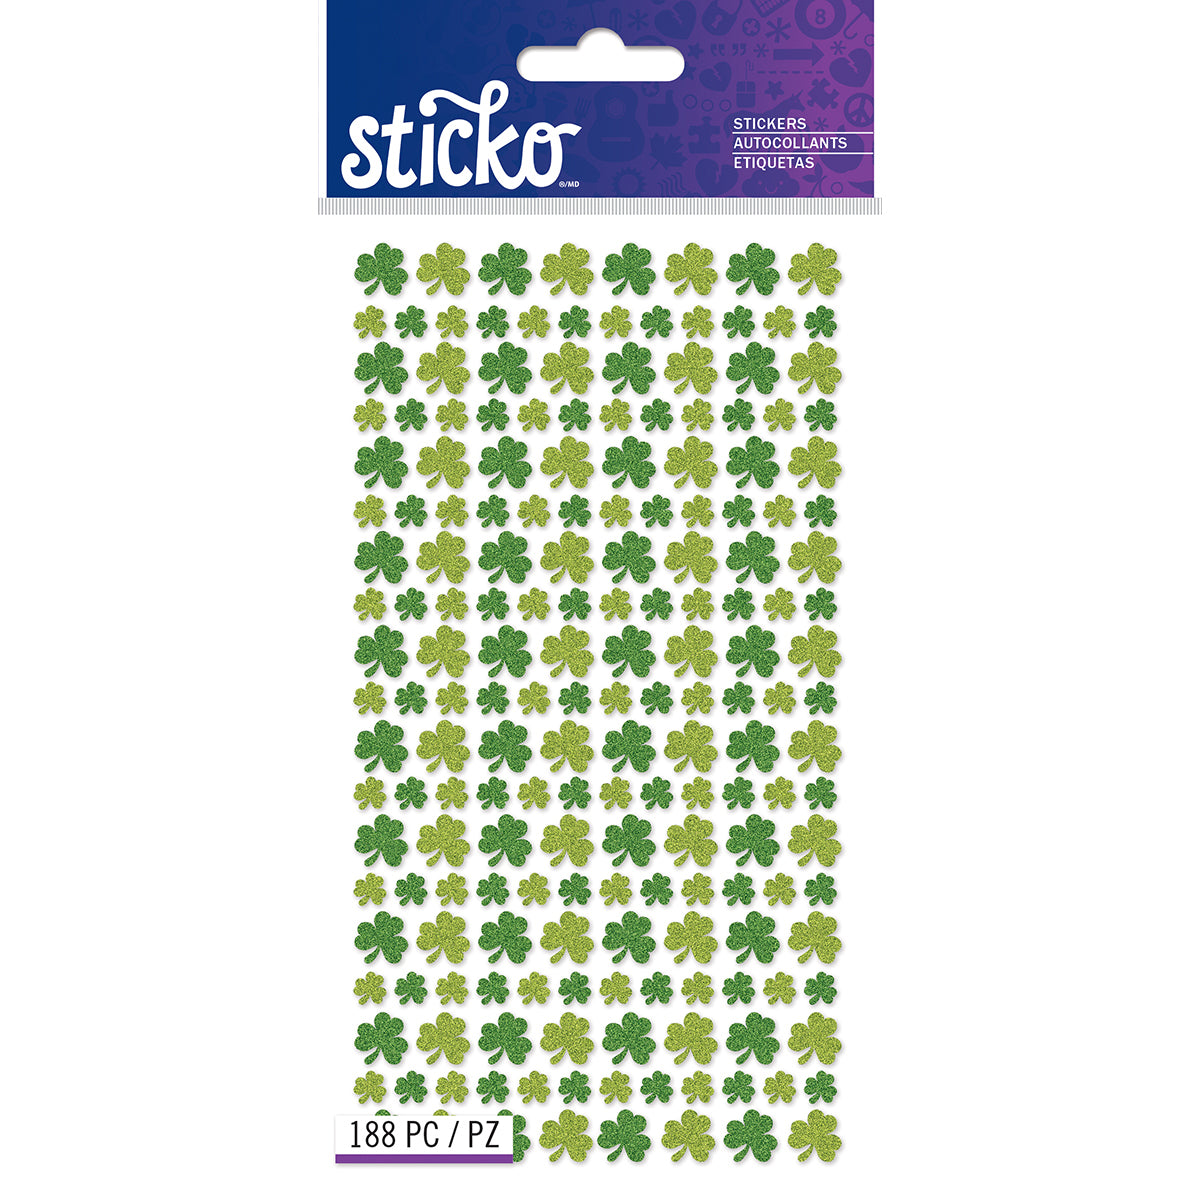 Sticko Stickers-Glitter Shamrocks